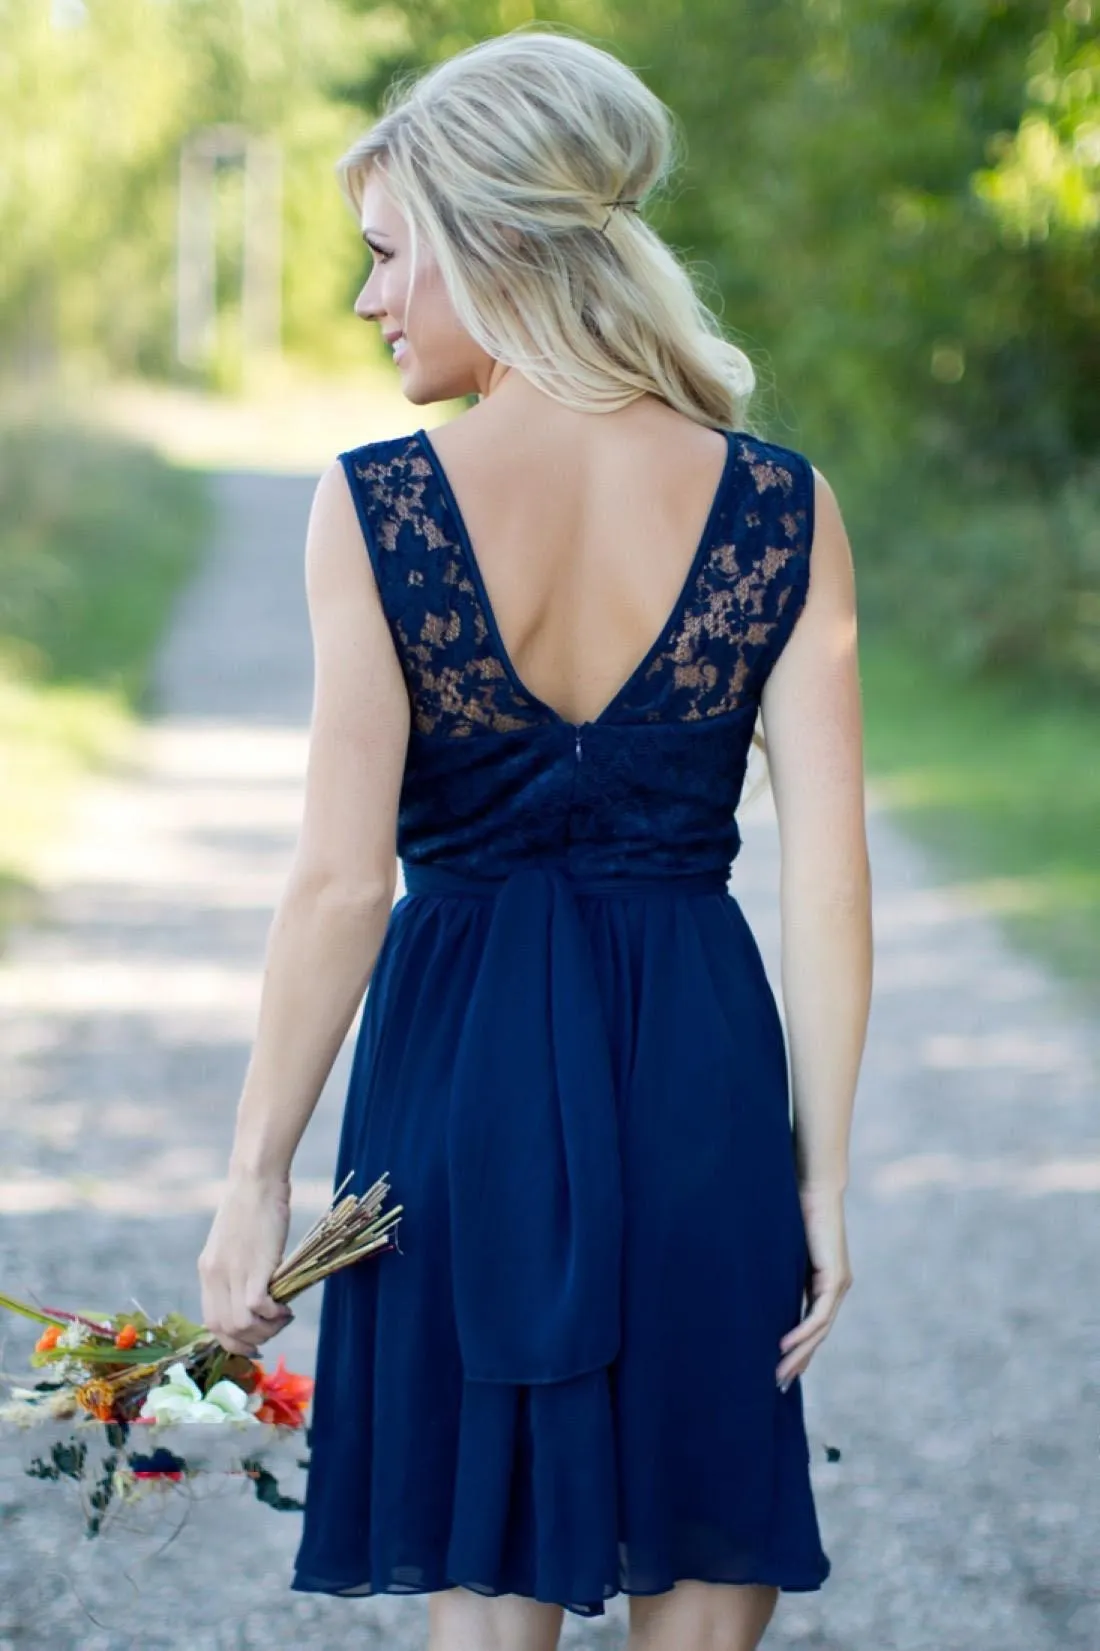 Landstijl Royal Blue Chiffon Lace Short Bruidsmeisje jurken voor bruiloften goedkoop juweel backless knie lengte casual jurken315j